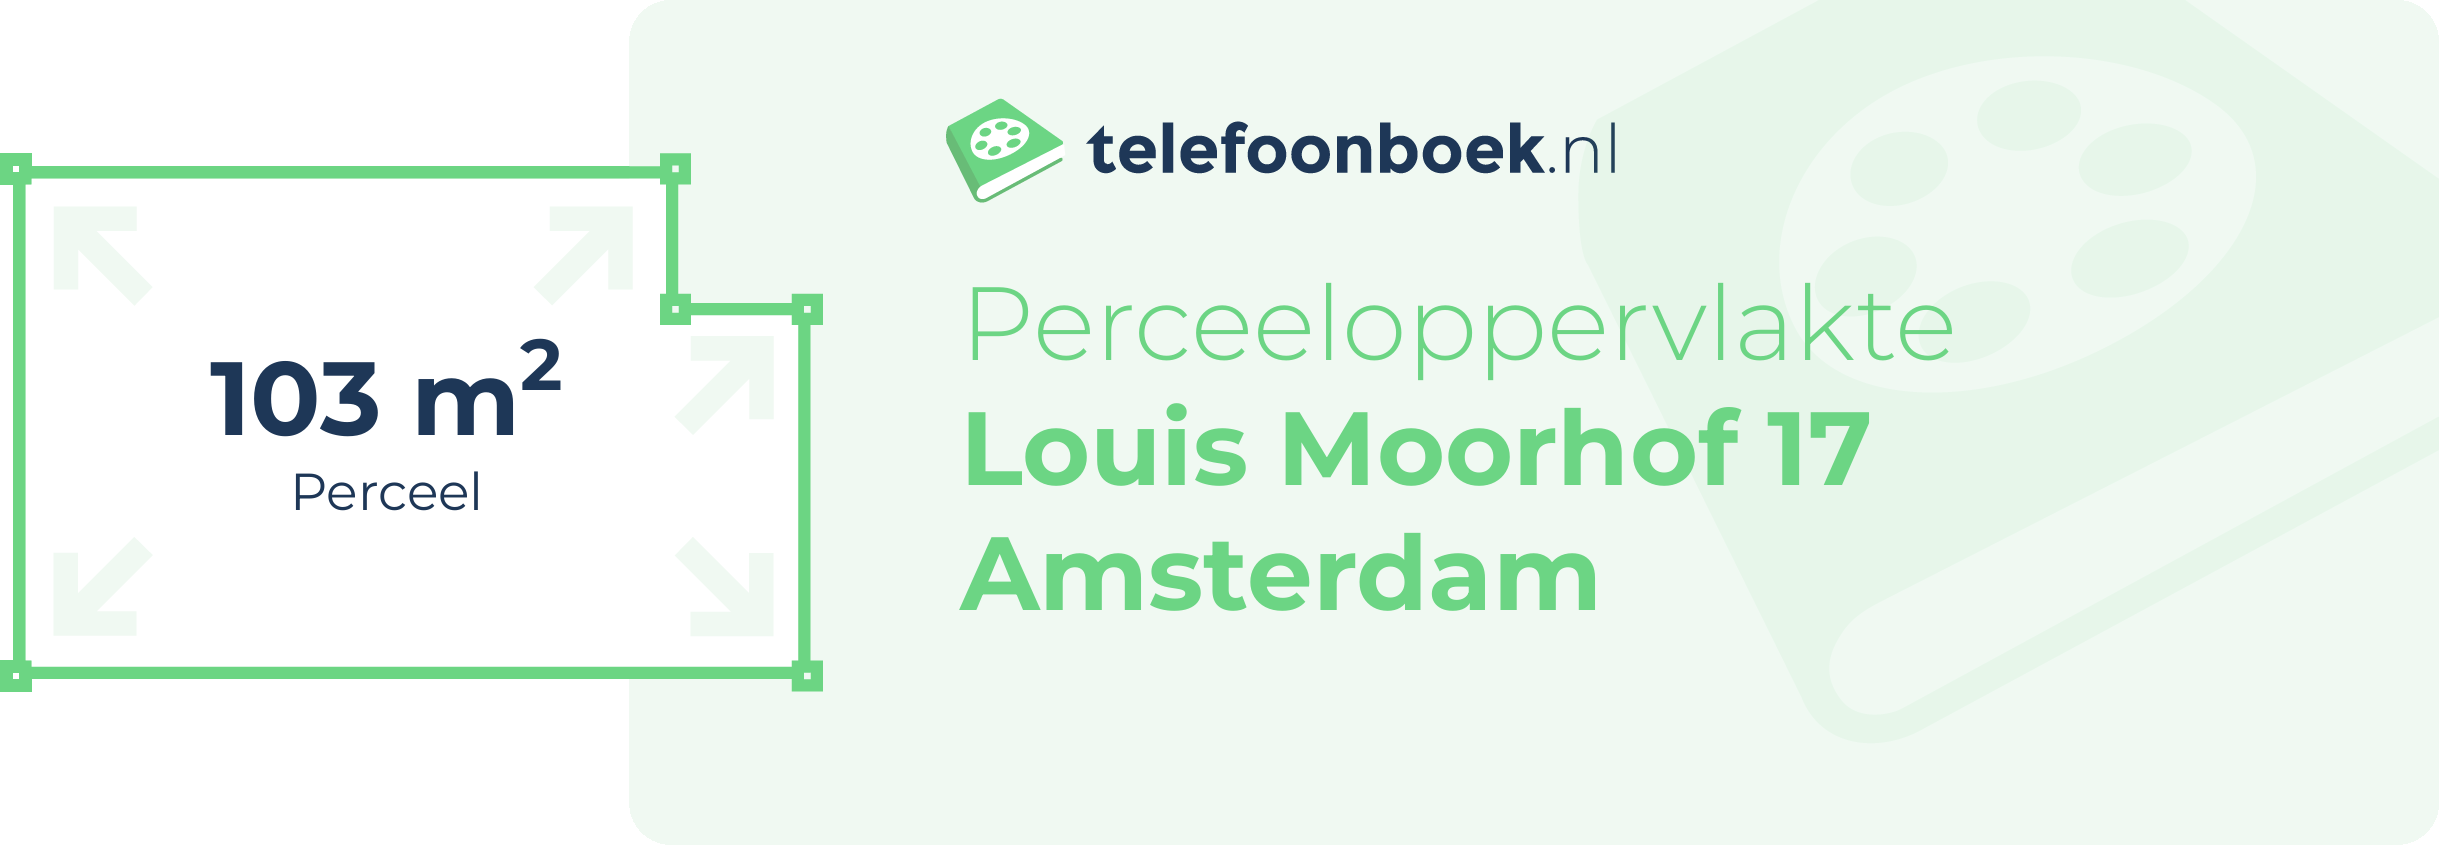 Perceeloppervlakte Louis Moorhof 17 Amsterdam